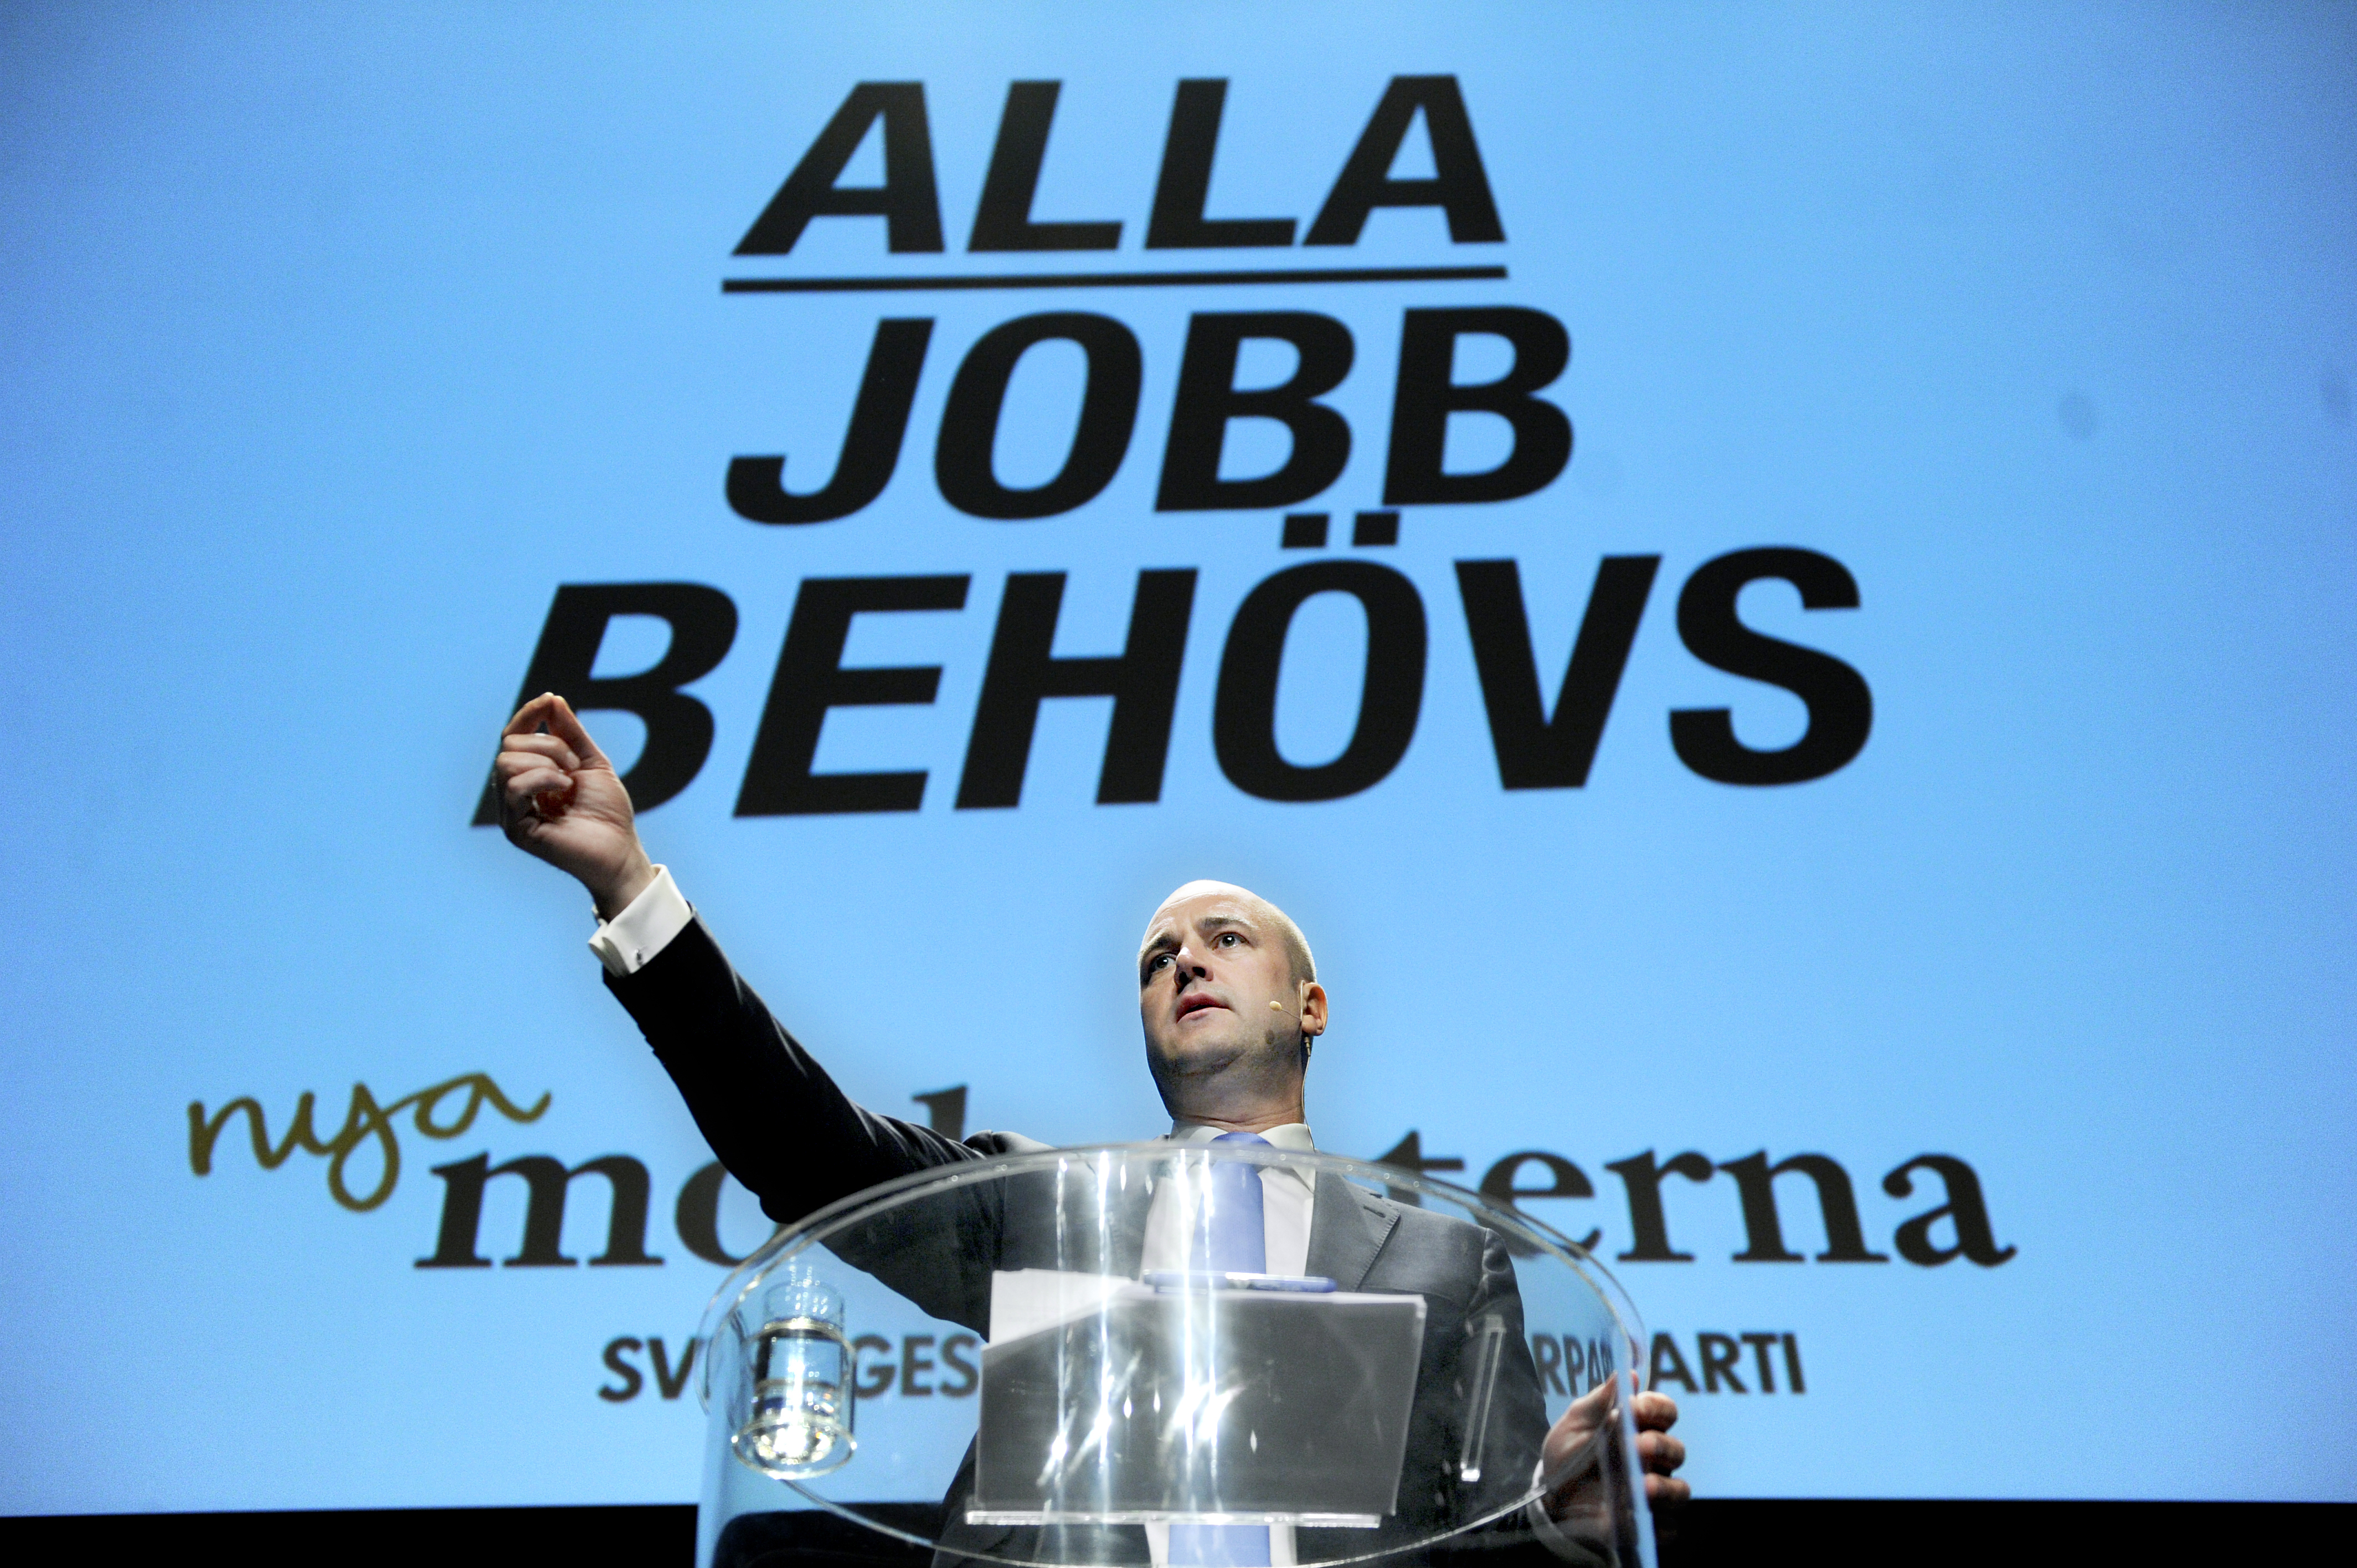 Alla jobb behövs, stod det bakom Fredrik Reinfeldt när Moderaterna hade riksmöte 2011. Men vad är det för slags full sysselsättning partiet eftersträvar?